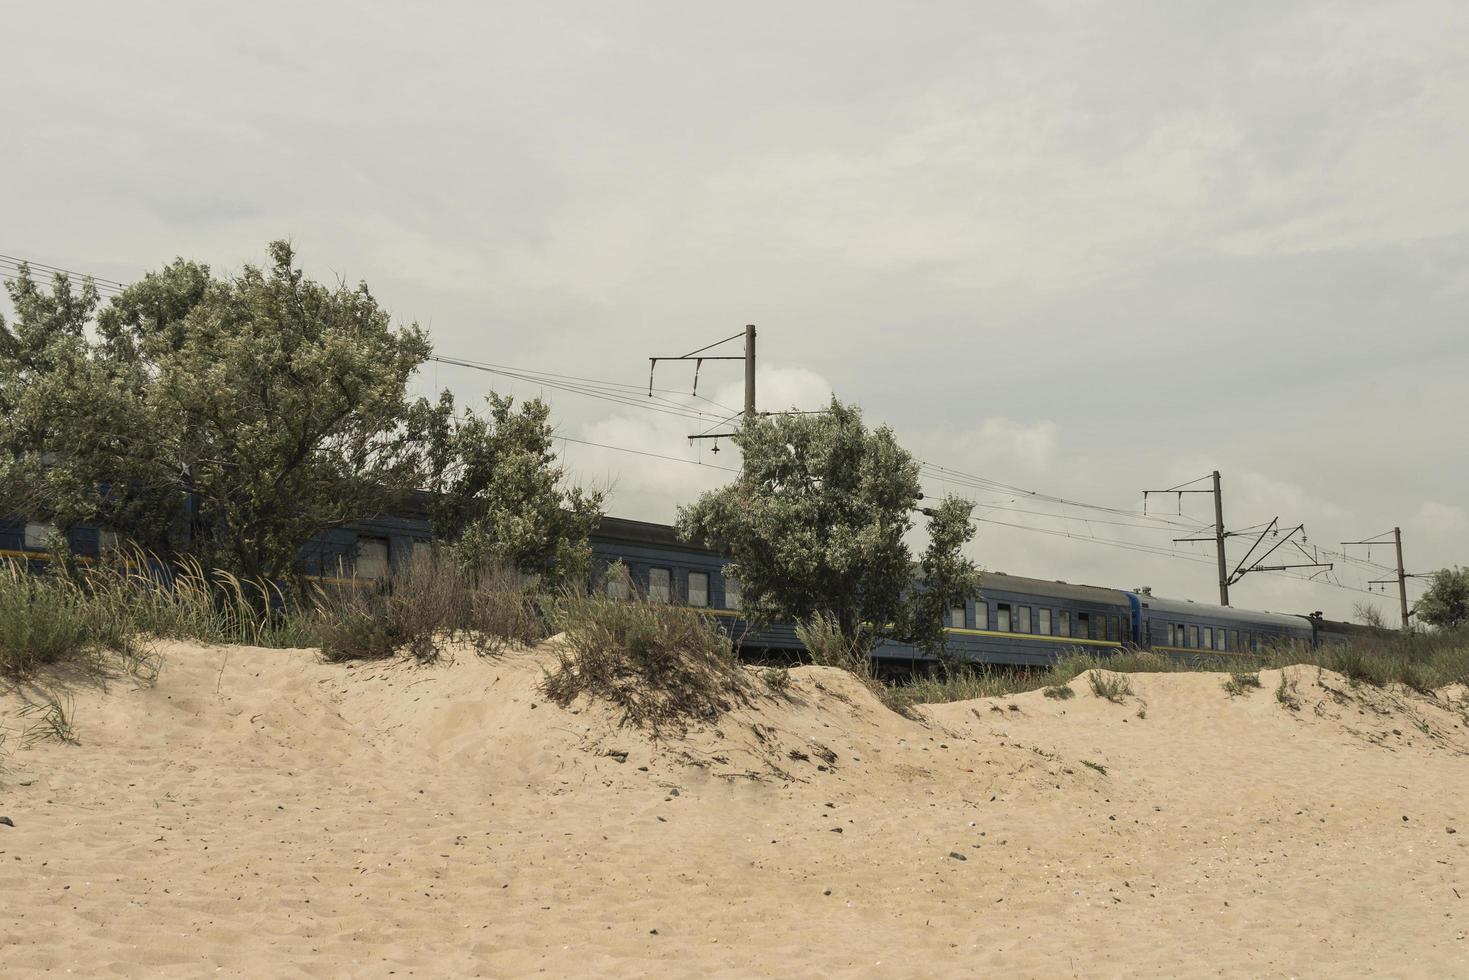 Der Zug fährt durch die Wüstenoliven, die in der Nähe der Eisenbahn wachsen foto